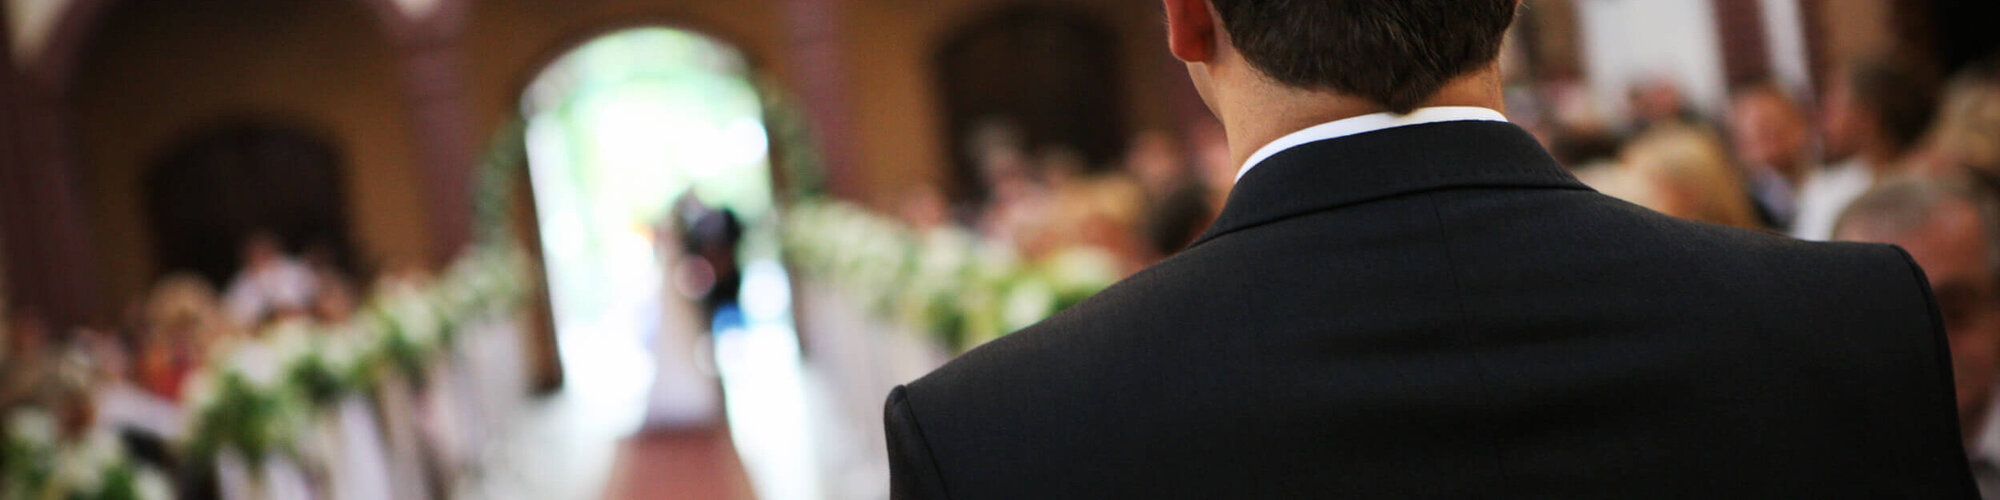 Eure kirchliche Trauung - Bräutigam wartet auf Braut